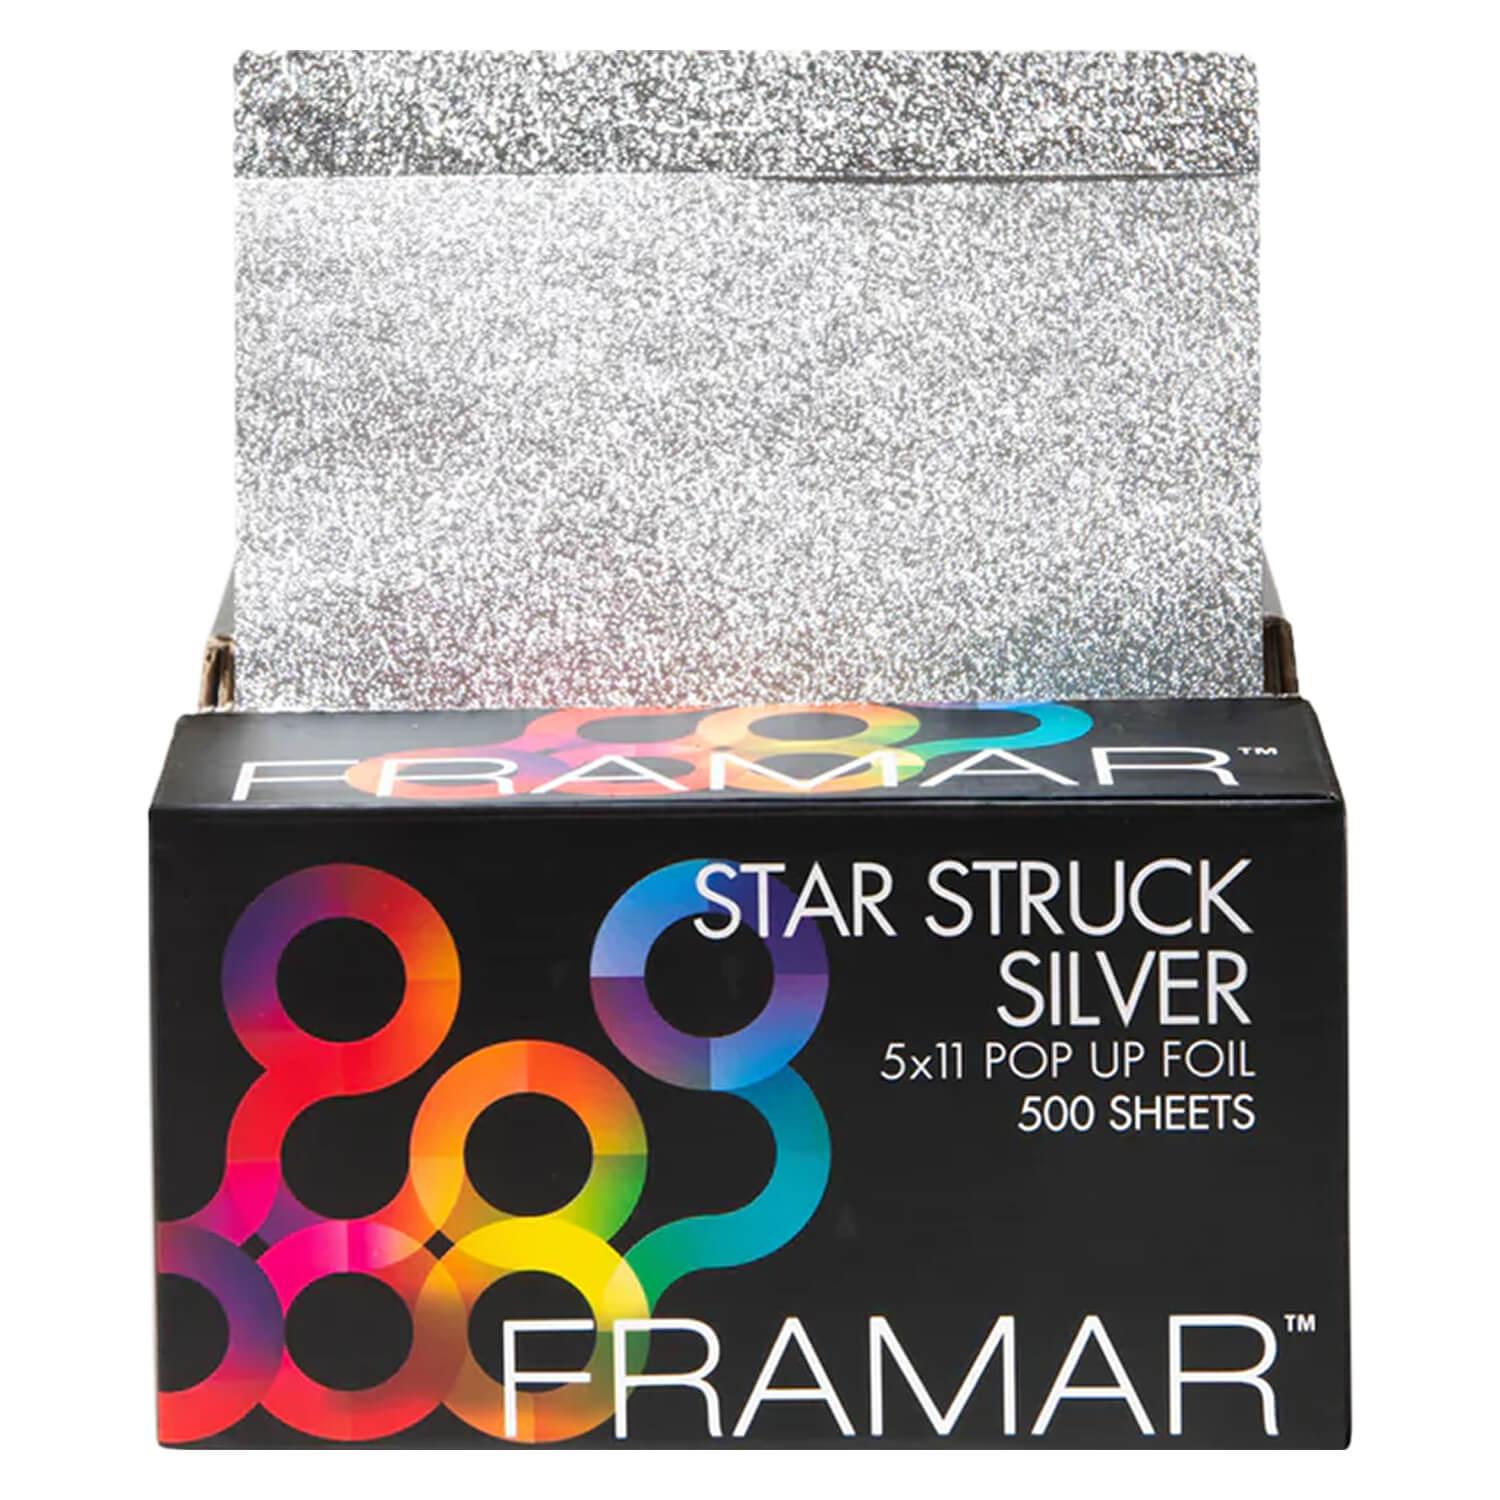 Framar - Pop Up Star Struck Foil